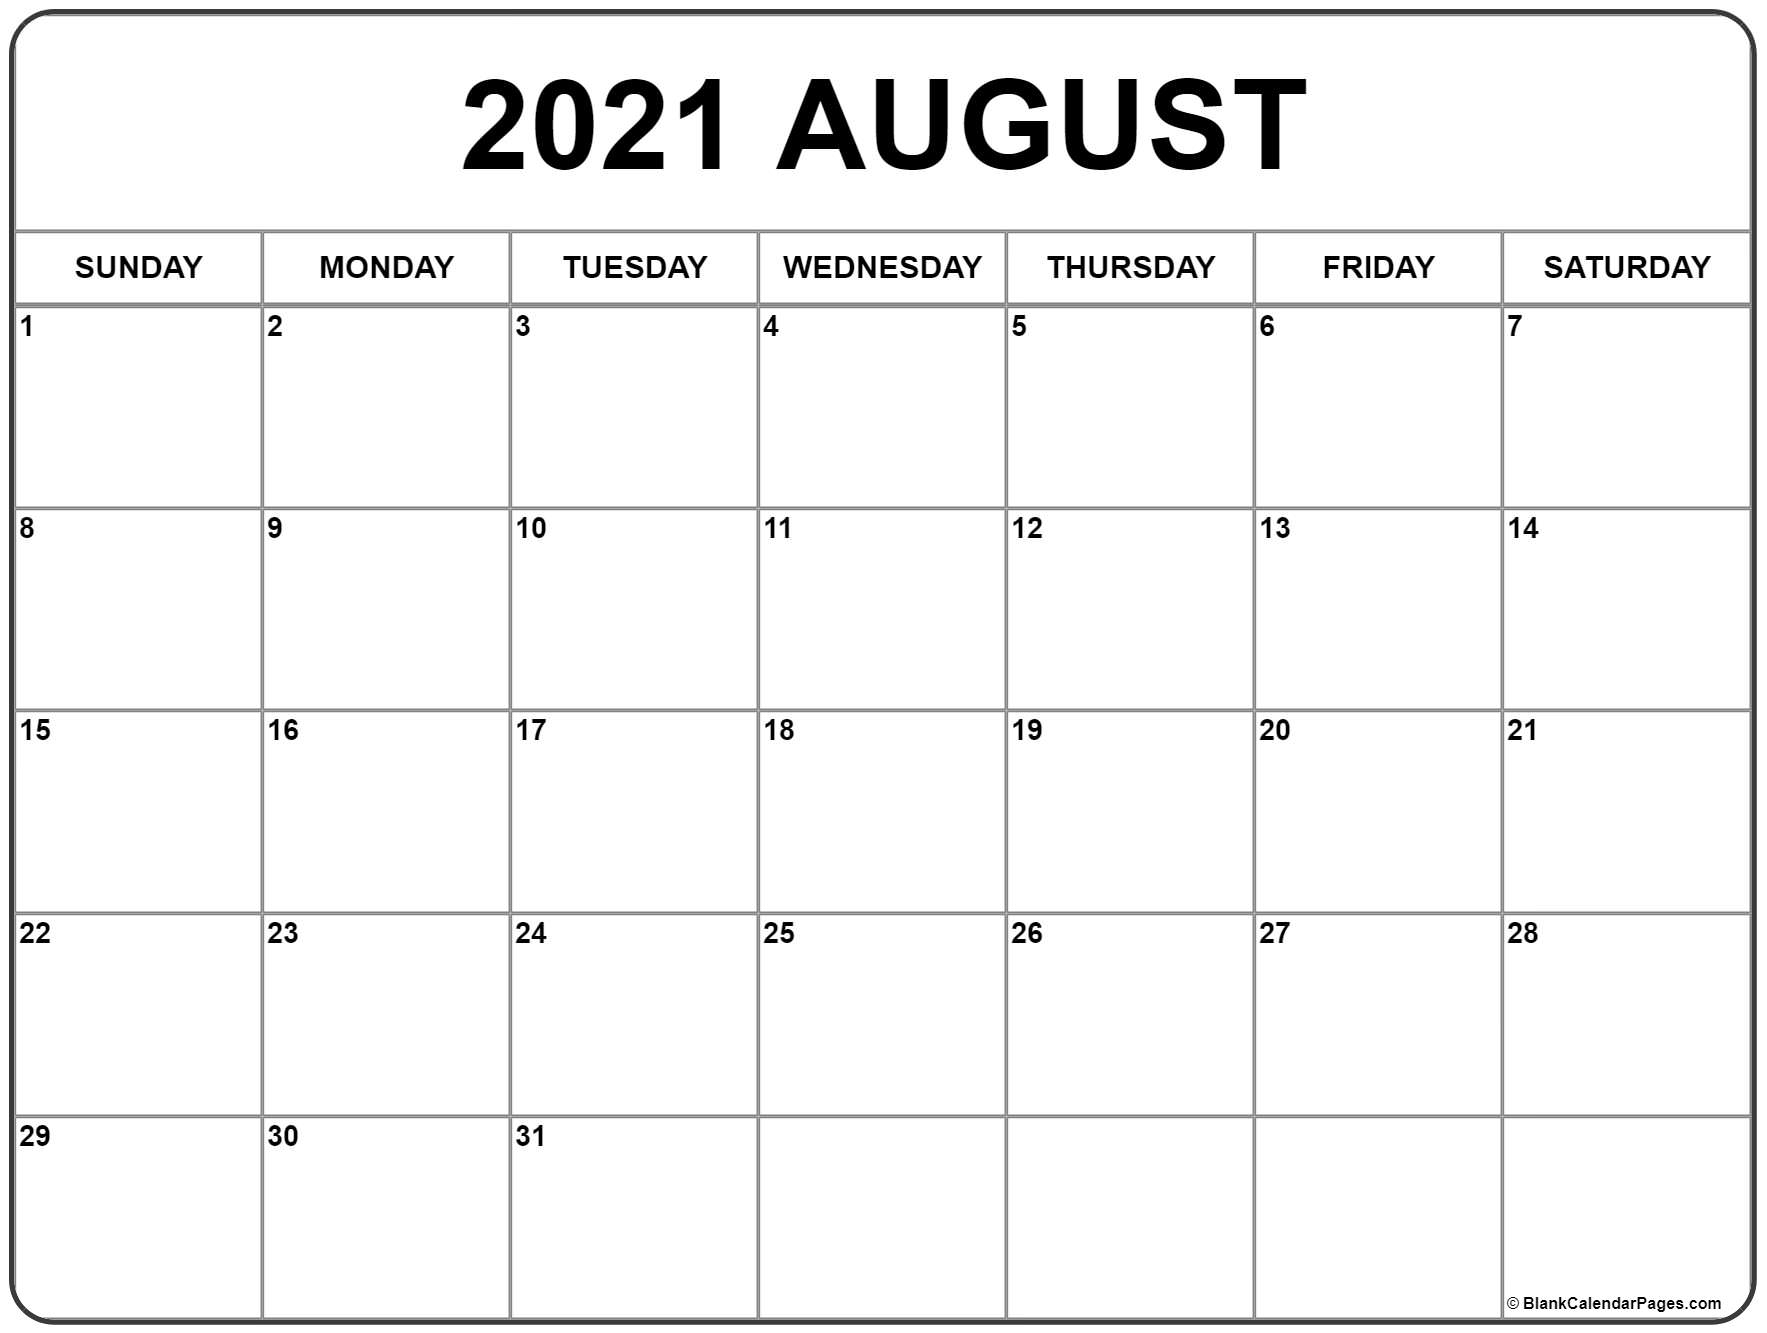 Get 2021 Calendar August-December